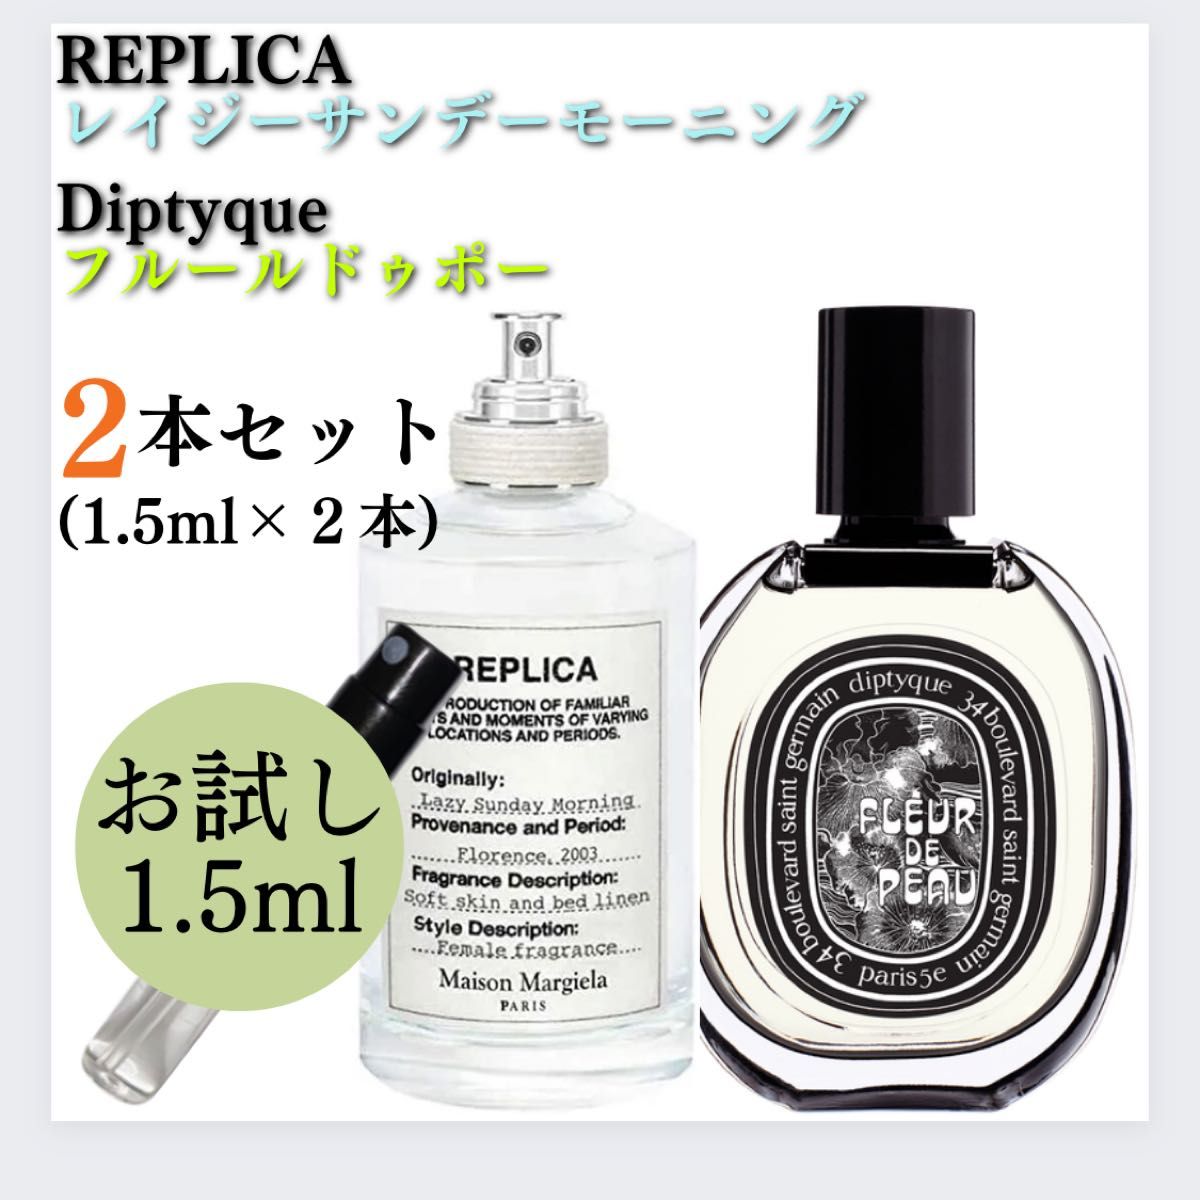 2本セット レイジーサンデーモーニング フルールドゥポー 1.5mlお試し 新品 ディプティック 香水 マルジェラ レプリカ